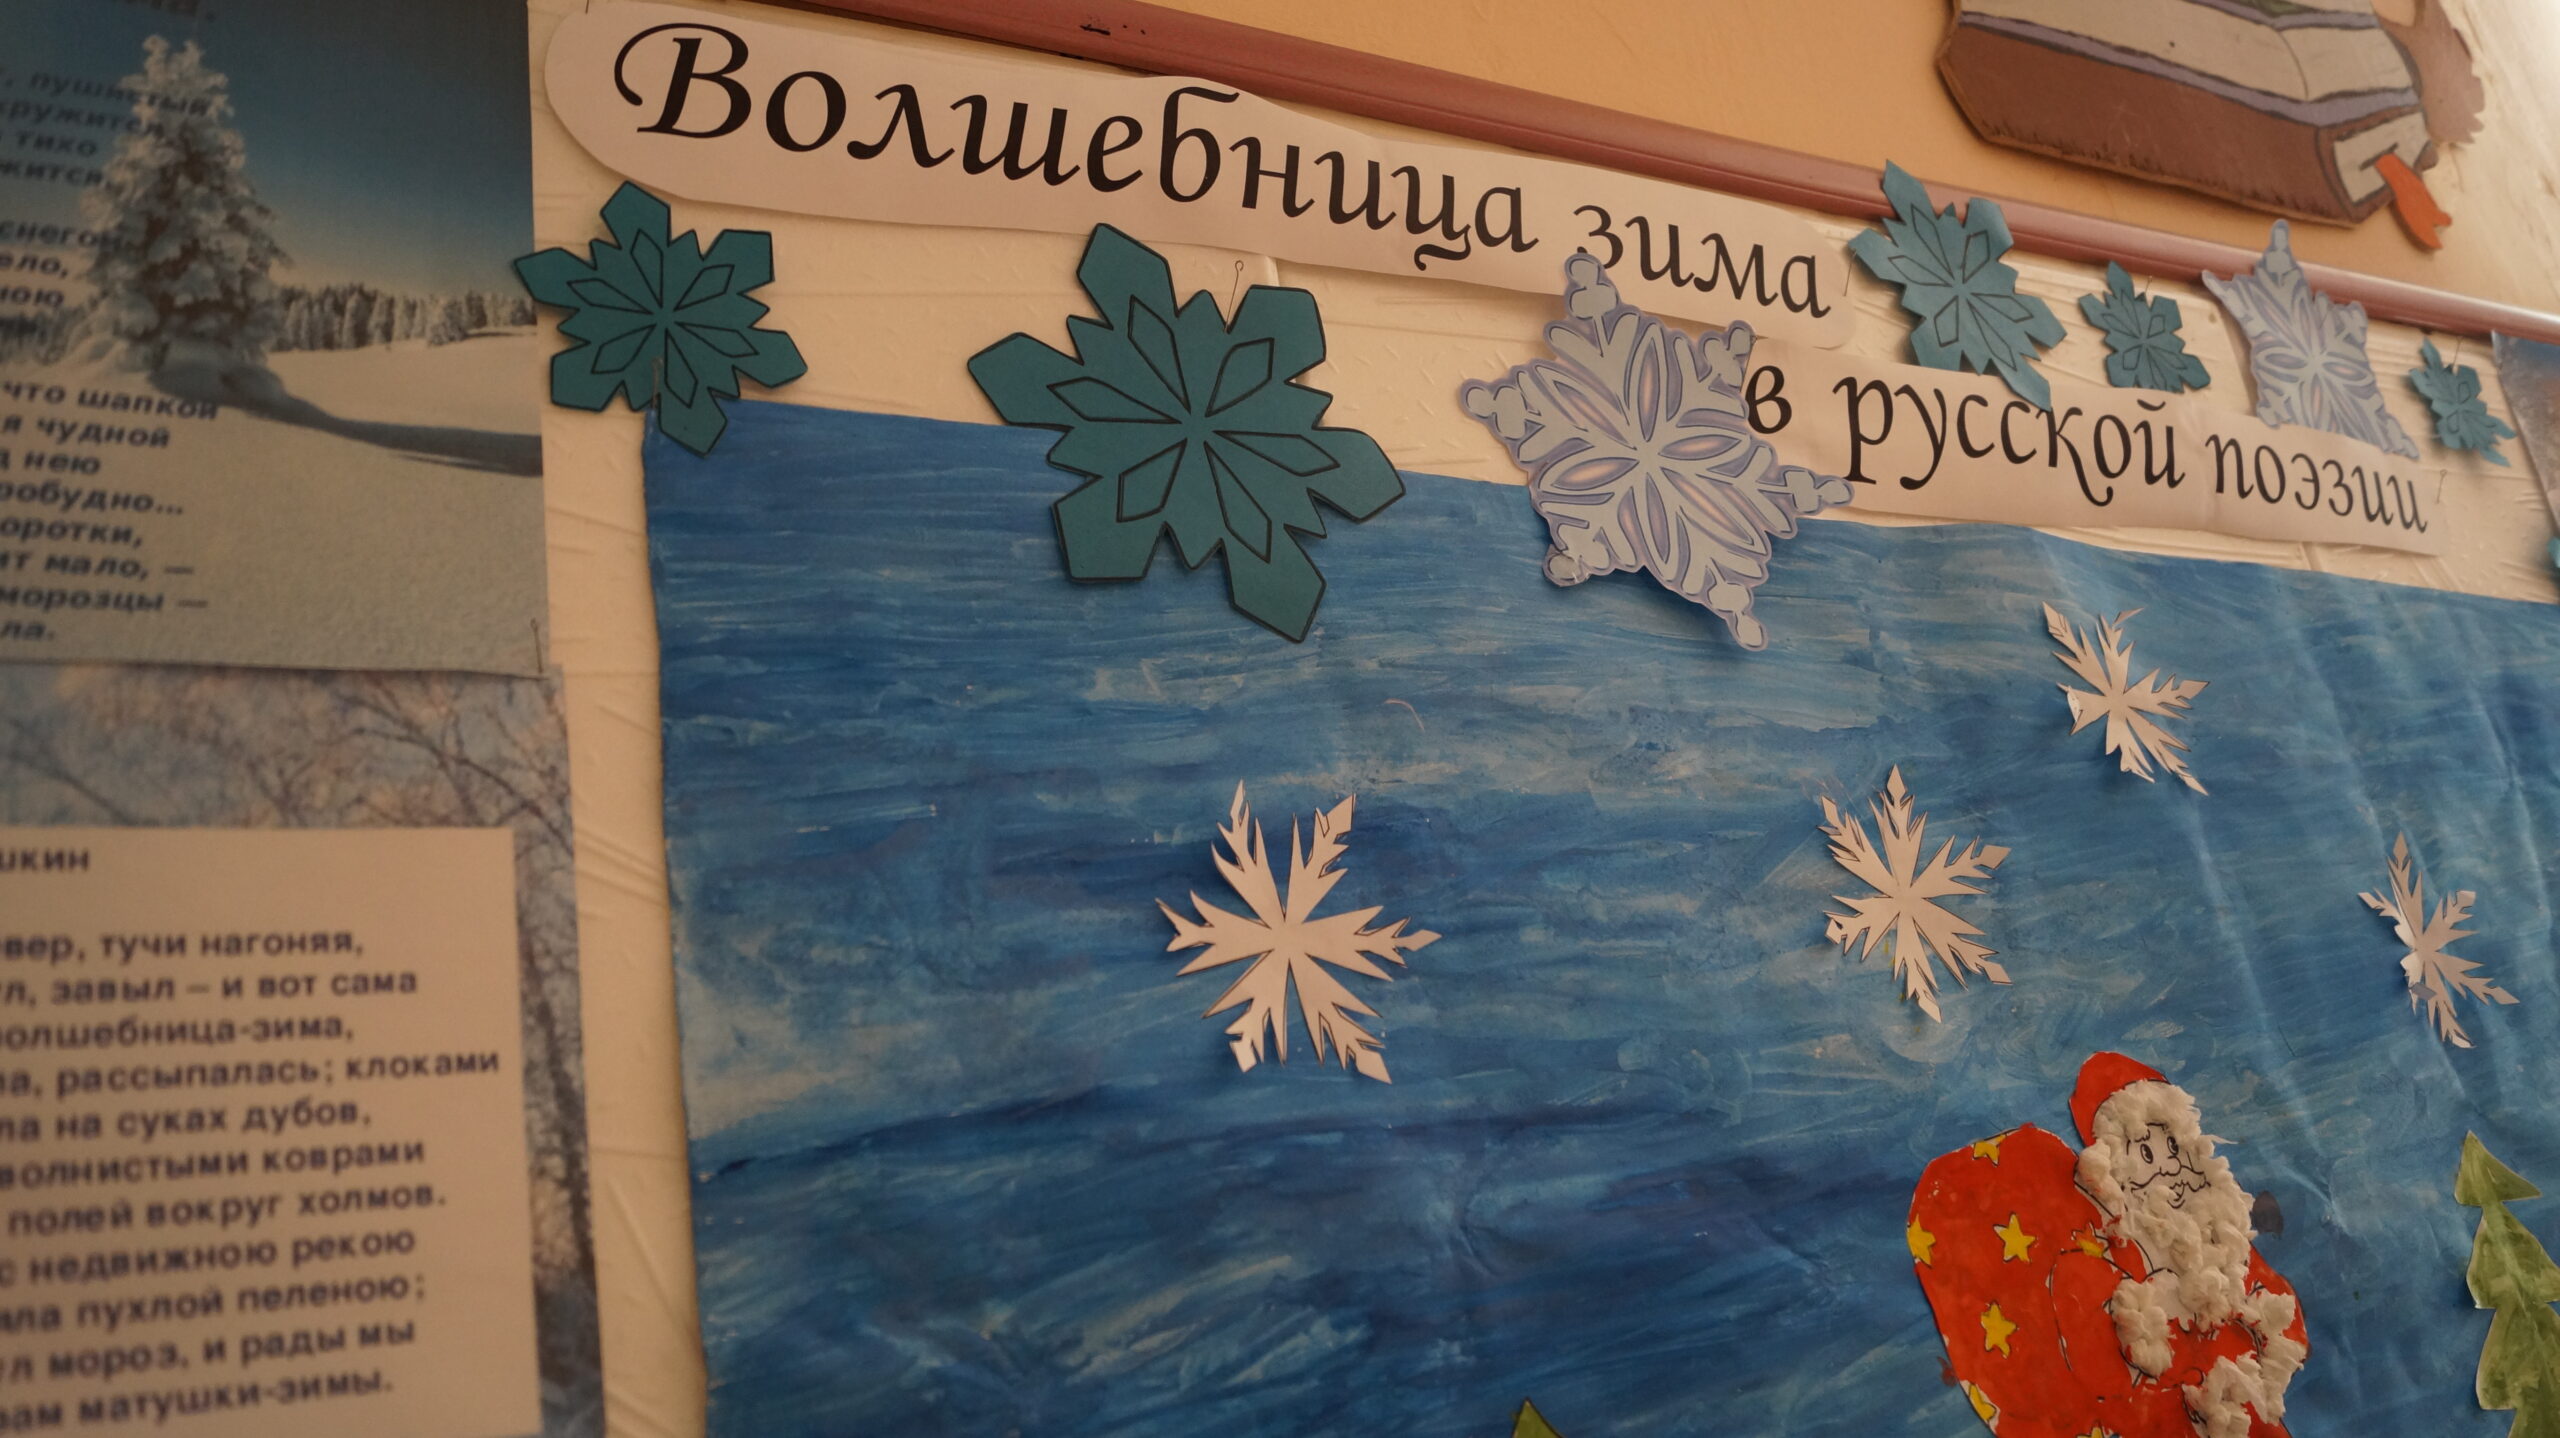 Волшебница зима в русской поэзии